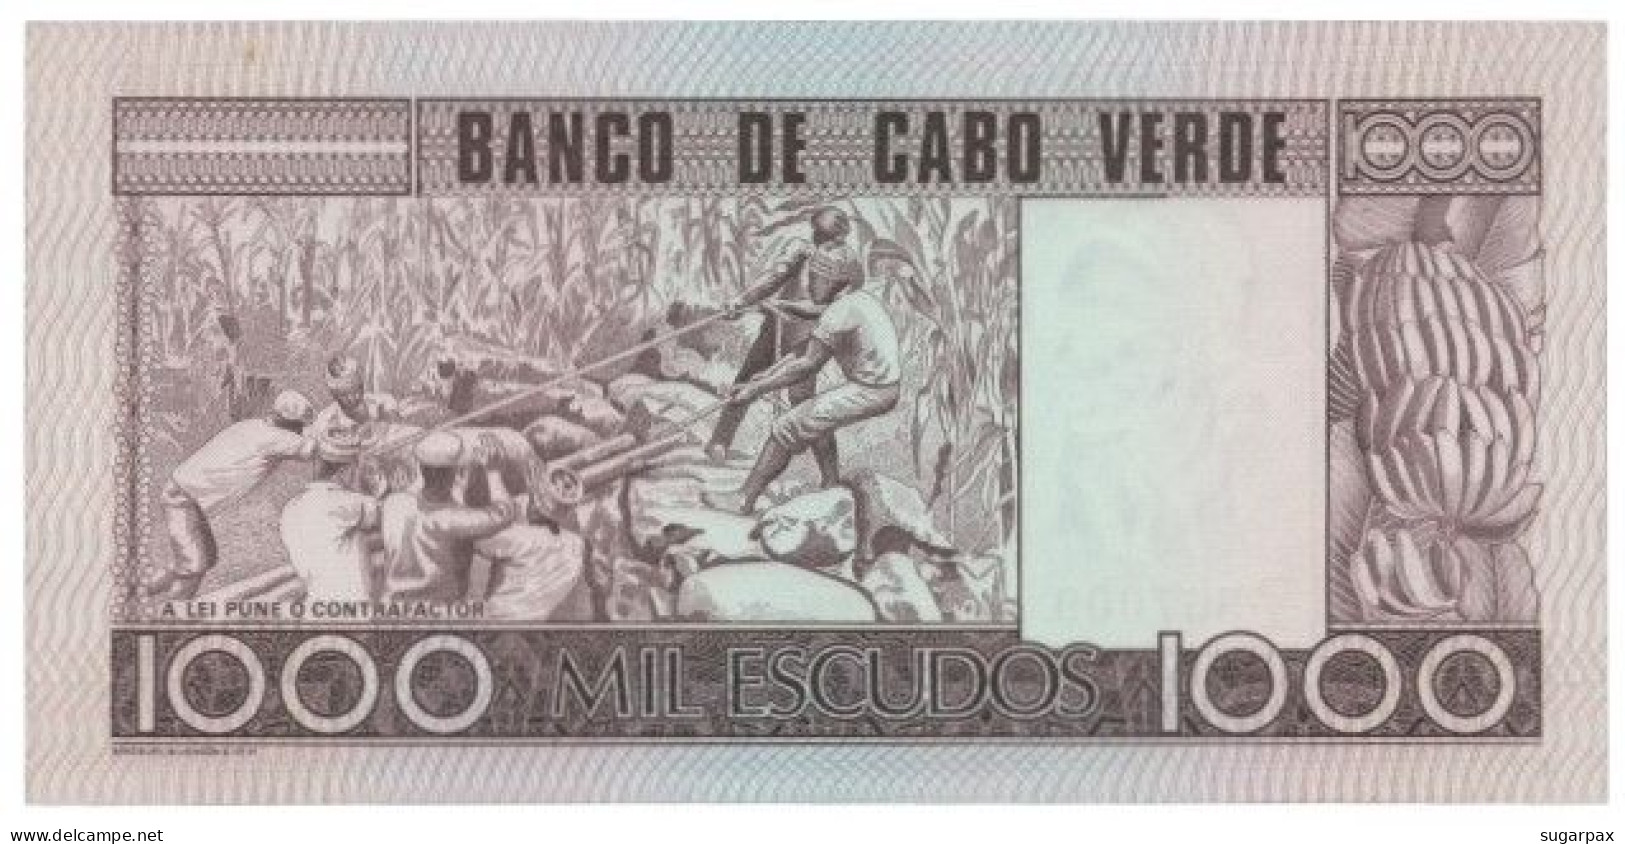 CAPE VERDE - 1000 ESCUDOS - 20.01.1977 - Pick 56.a - Unc. - Amilcar Cabral - 1 000 - Capo Verde